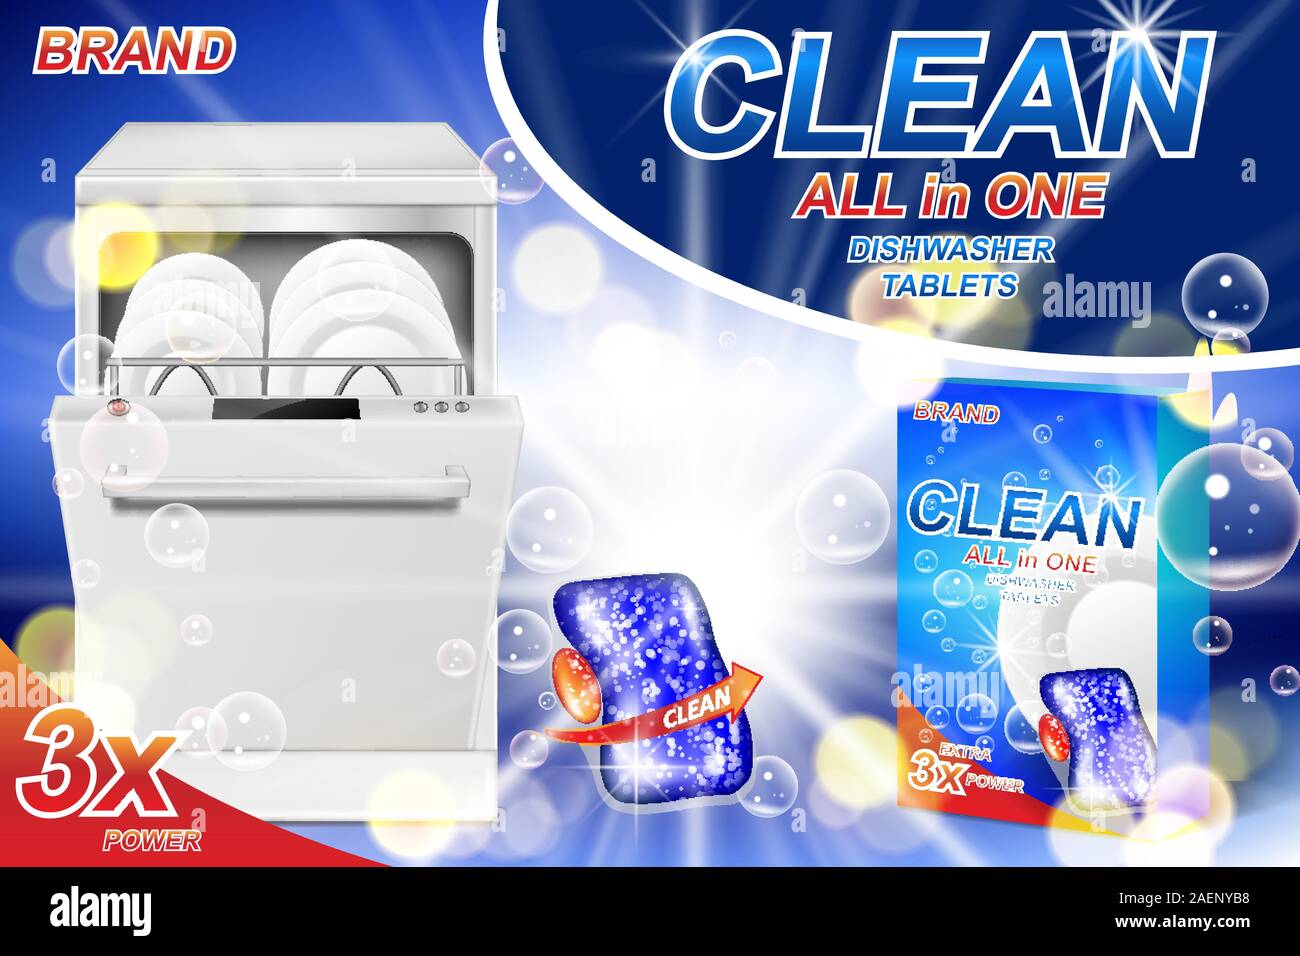 Lavare i piatti annunci di sapone. Realistica per il lavaggio di stoviglie di plastica Imballaggi con gel detergente per poster pubblicitari. Il sapone liquido pasticche per lavastoviglie. 3d Illustrazione Vettoriale